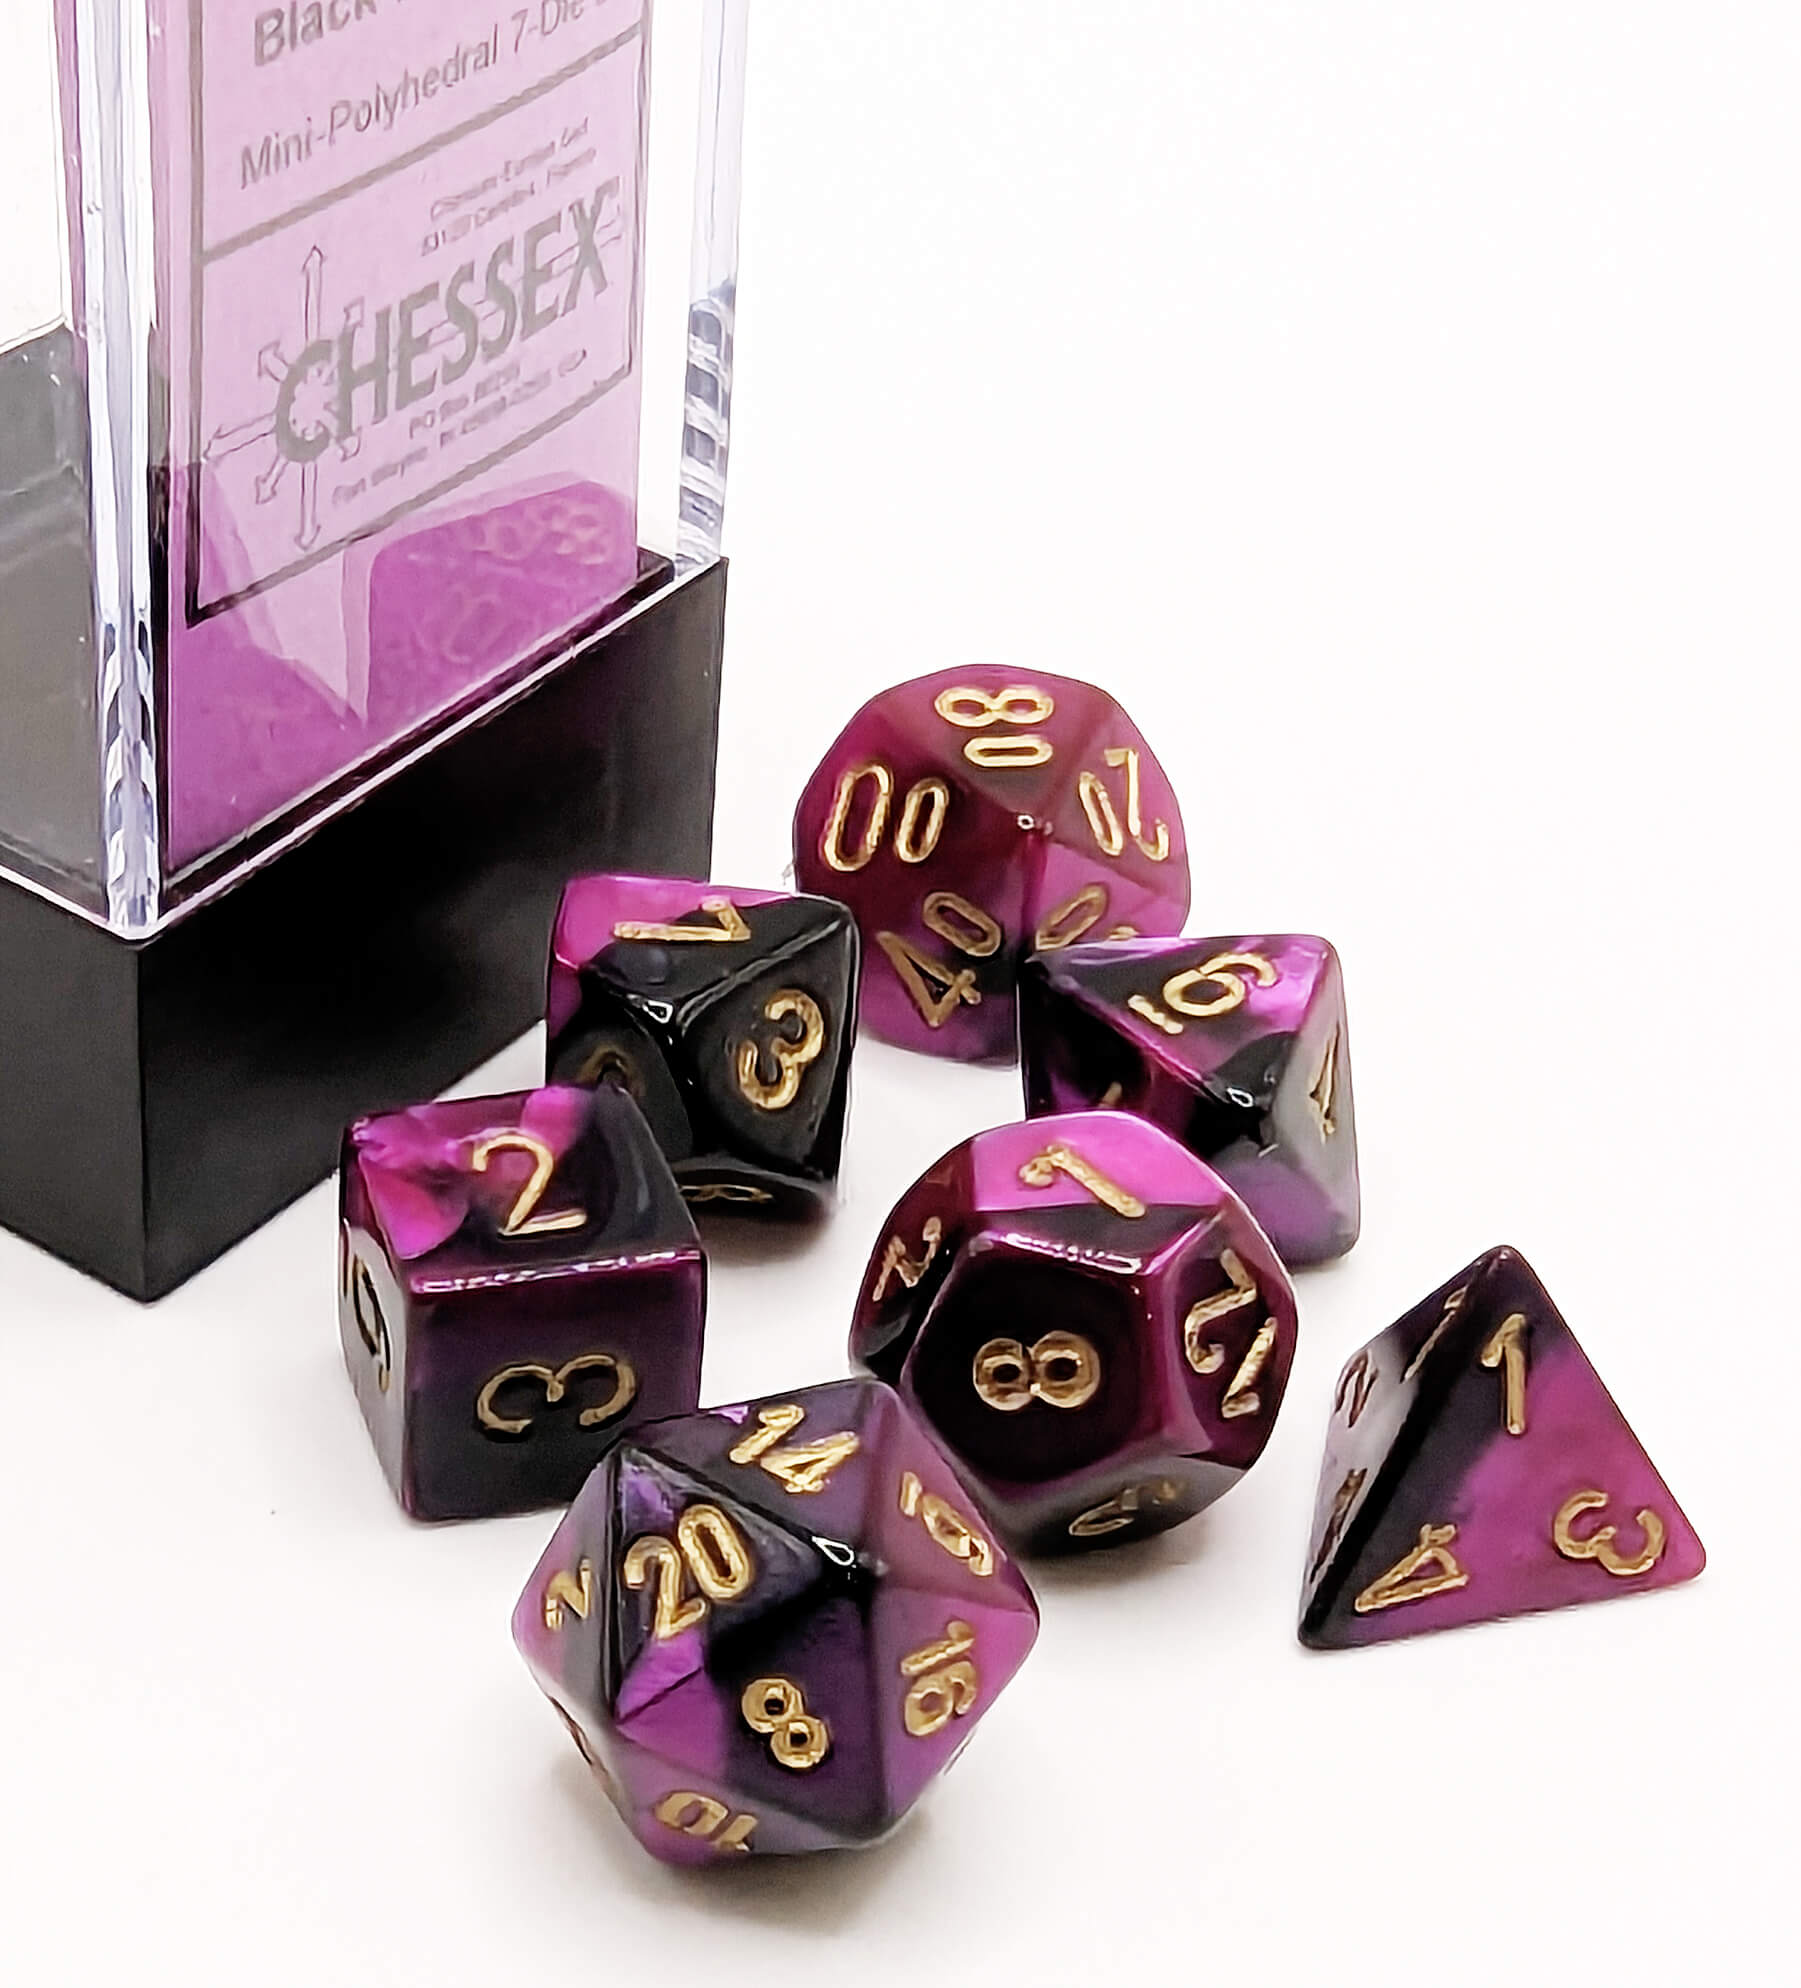 Chessex Mini Dice Series 2 (Gemini Black Purple) | 10mm TTRPG Dice Set CHX20640